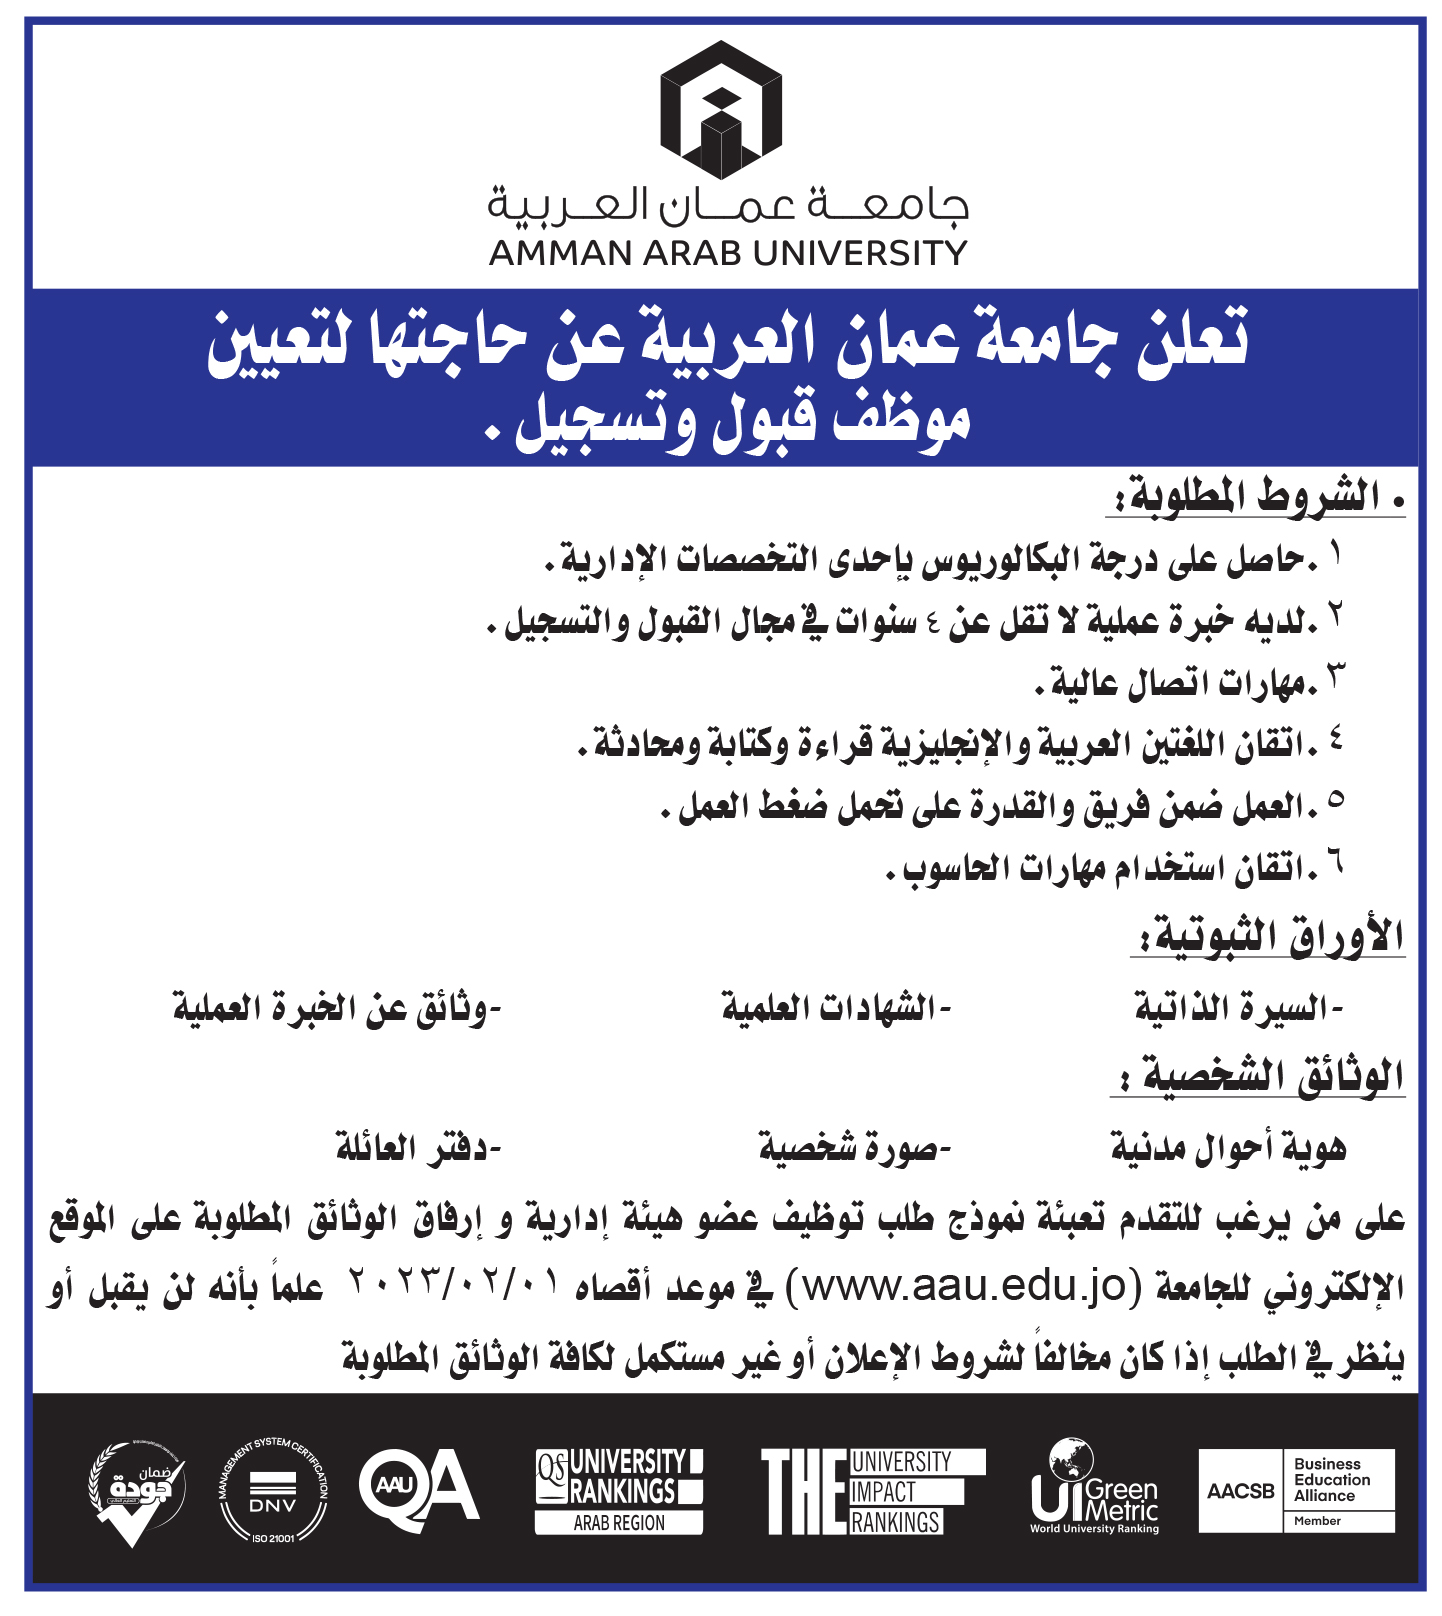 تعلن جامعة عمان العربية عن حاجتها لتعيين موظف قبول وتسجيل